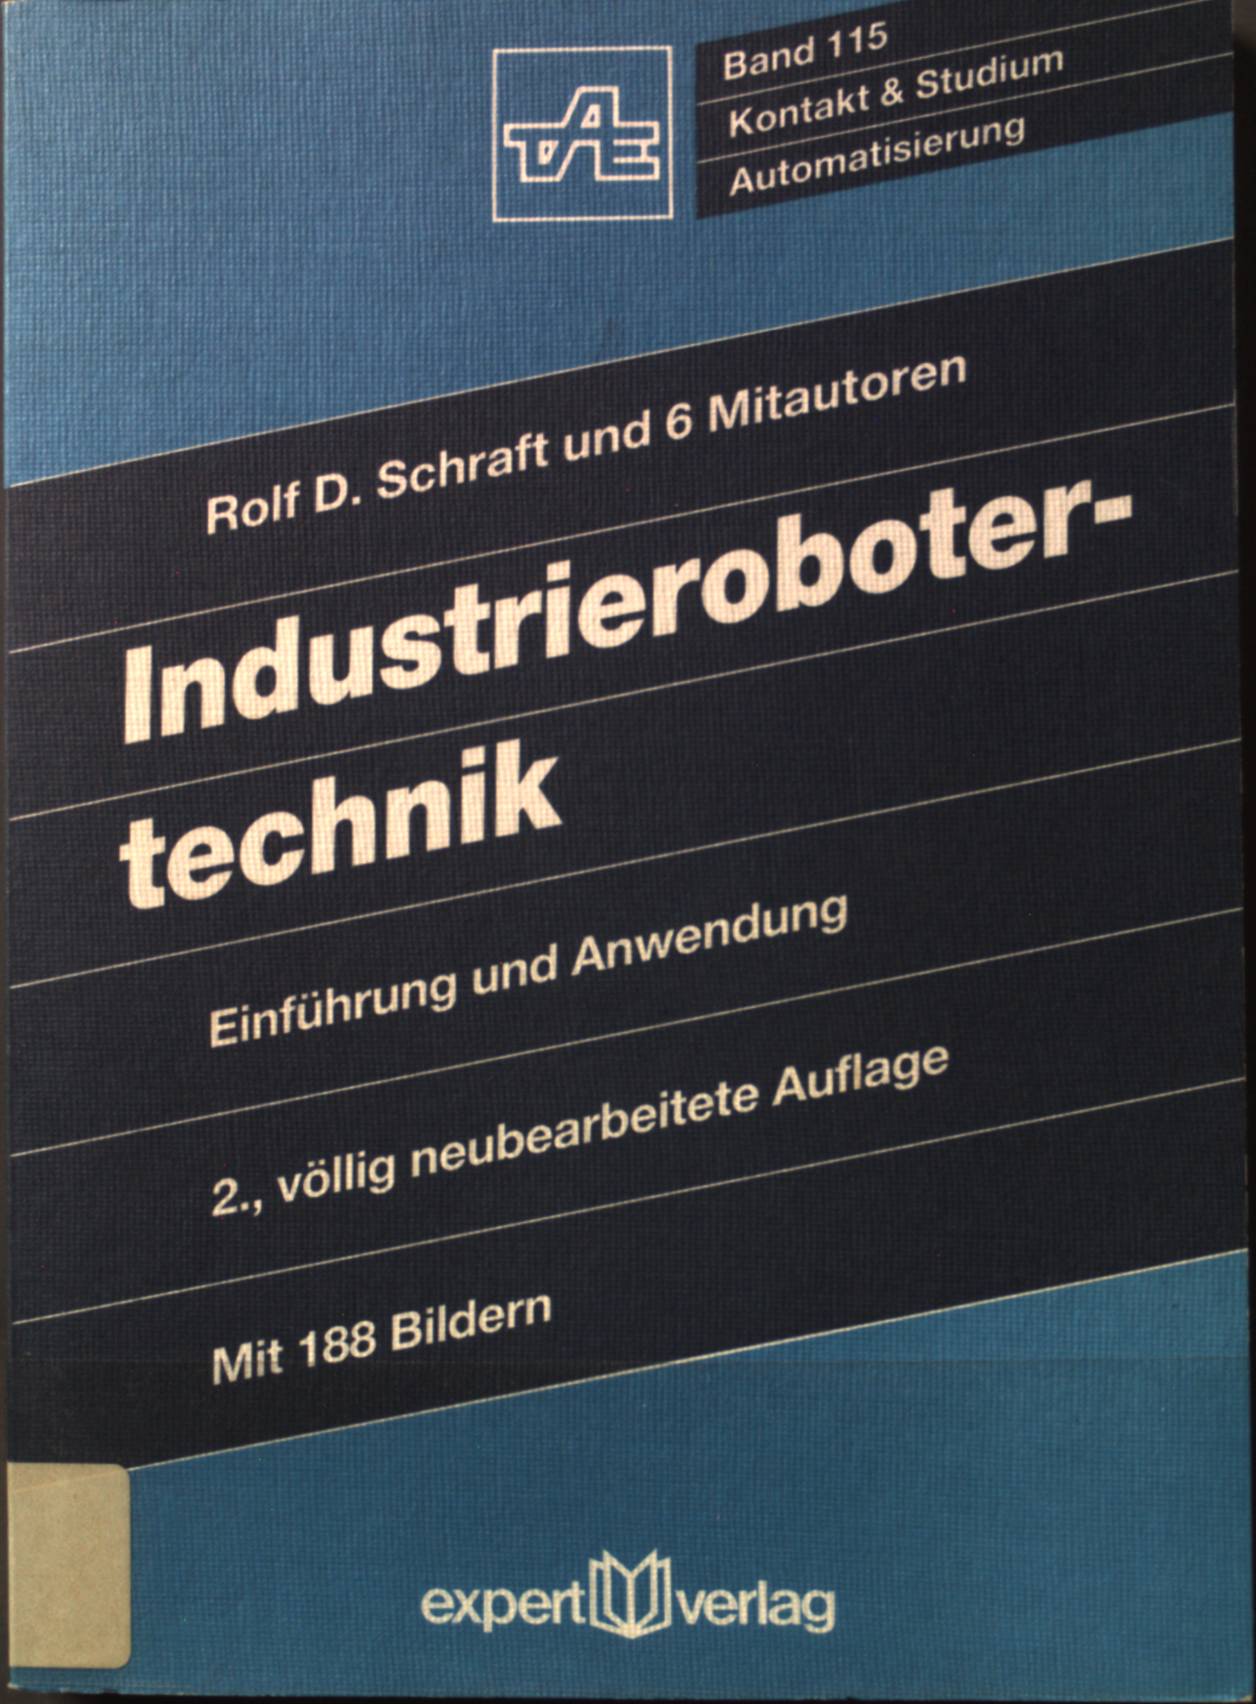 Industrierobotertechnik : Einführung und Anwendung. Kontakt & Studium ; Bd. 115 - Schraft, Rolf Dieter